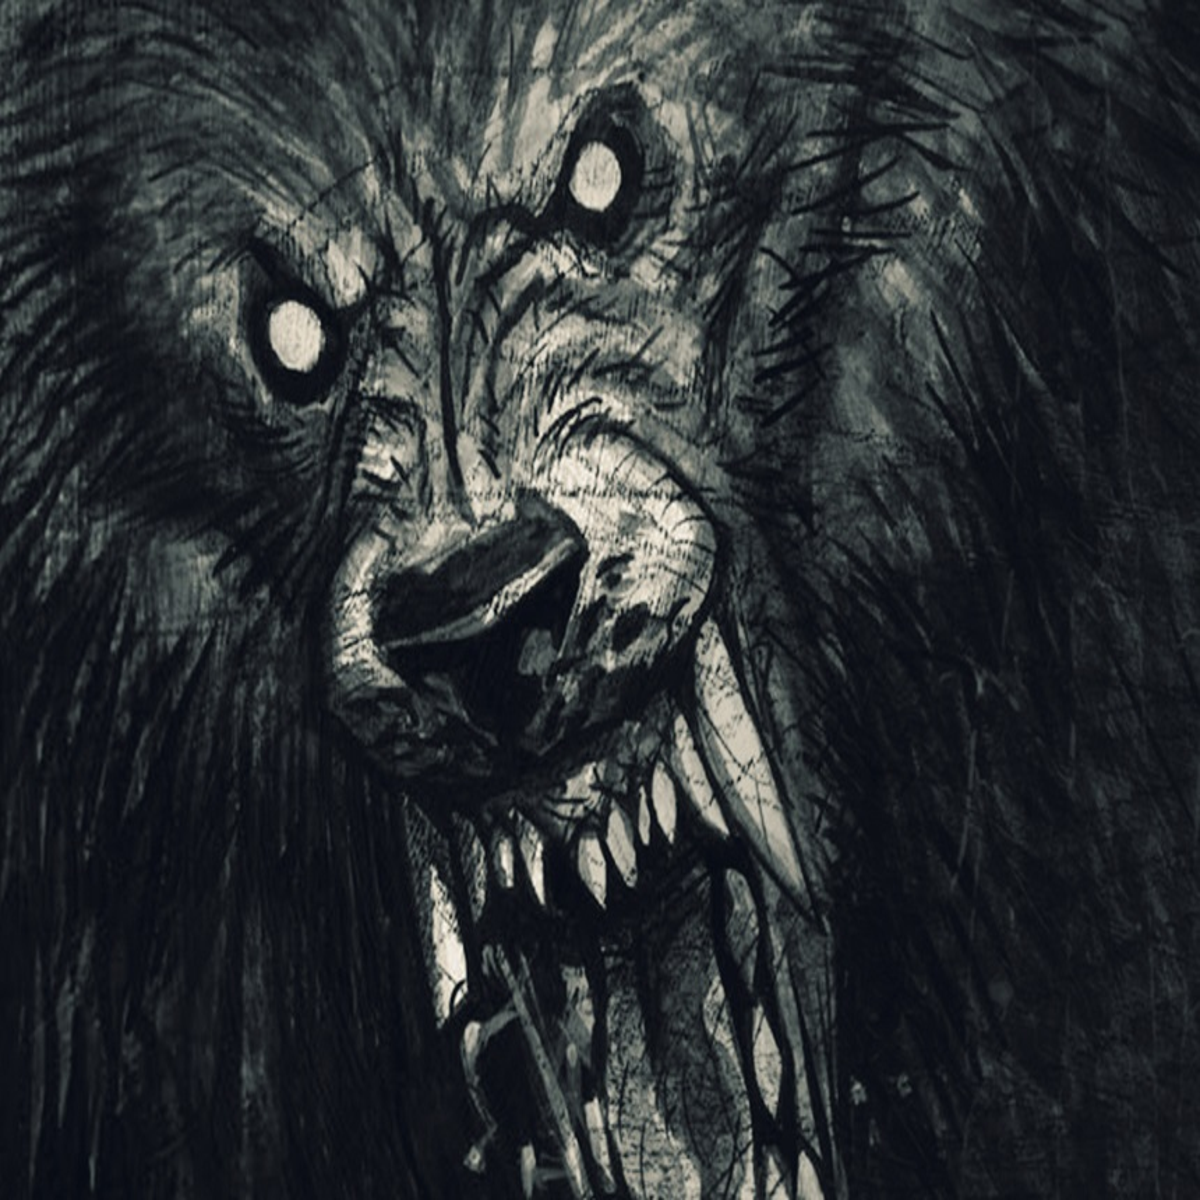 Roblox - NIGHT OF THE WEREWOLF! (Escape the Werewolf) 